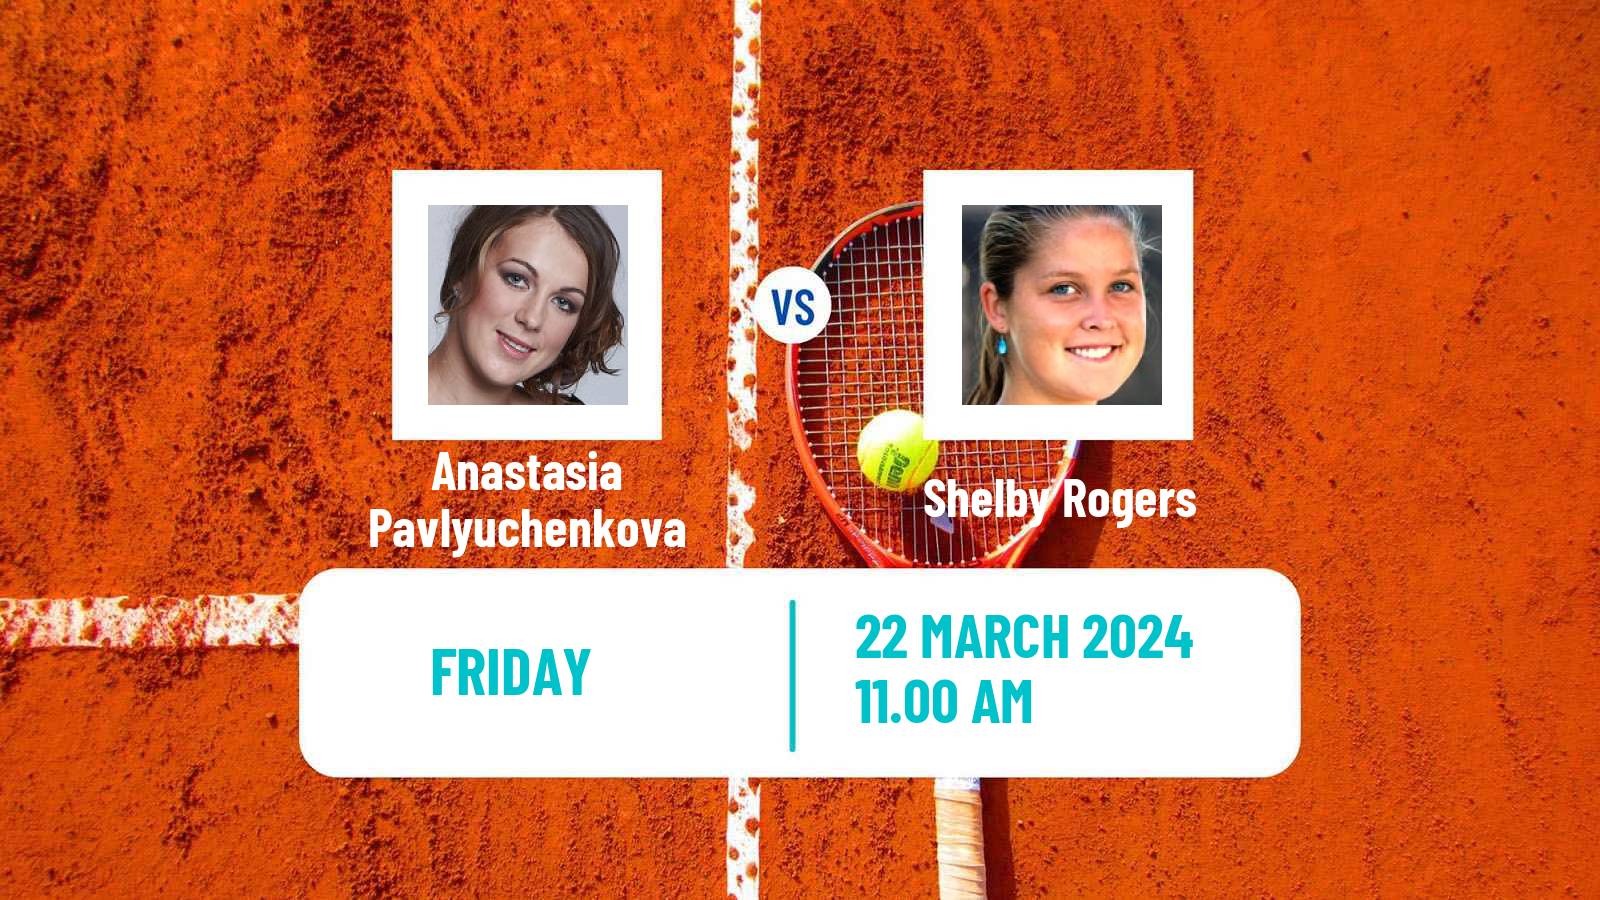 Tennis WTA Miami Anastasia Pavlyuchenkova - Shelby Rogers